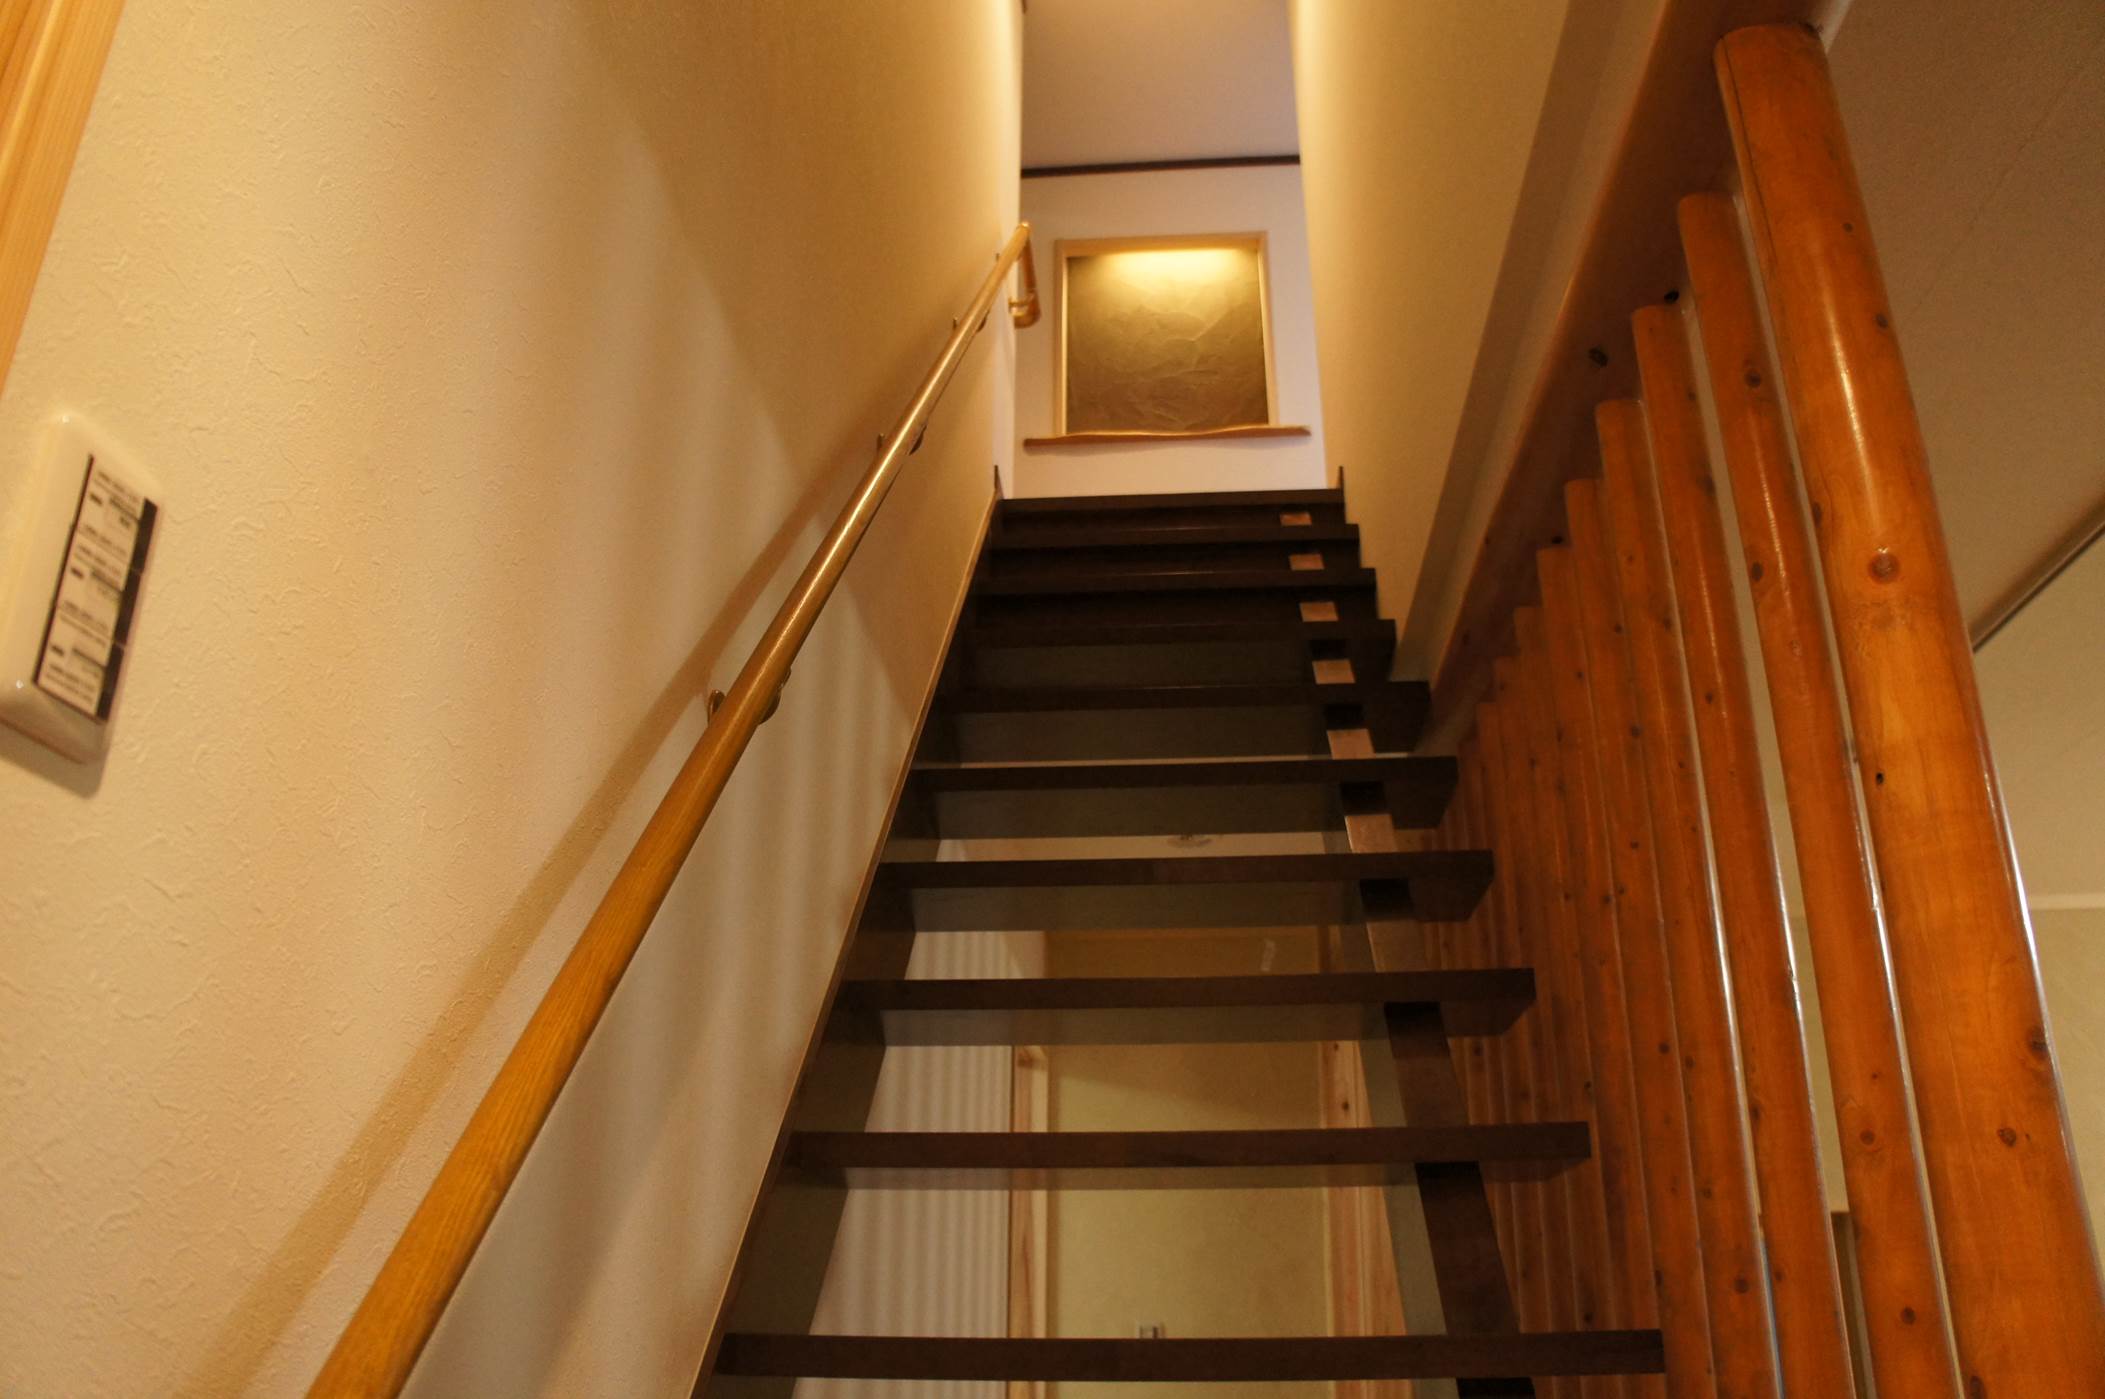 ストリップ階段を用いることにより、空間の広がりが感じられます。